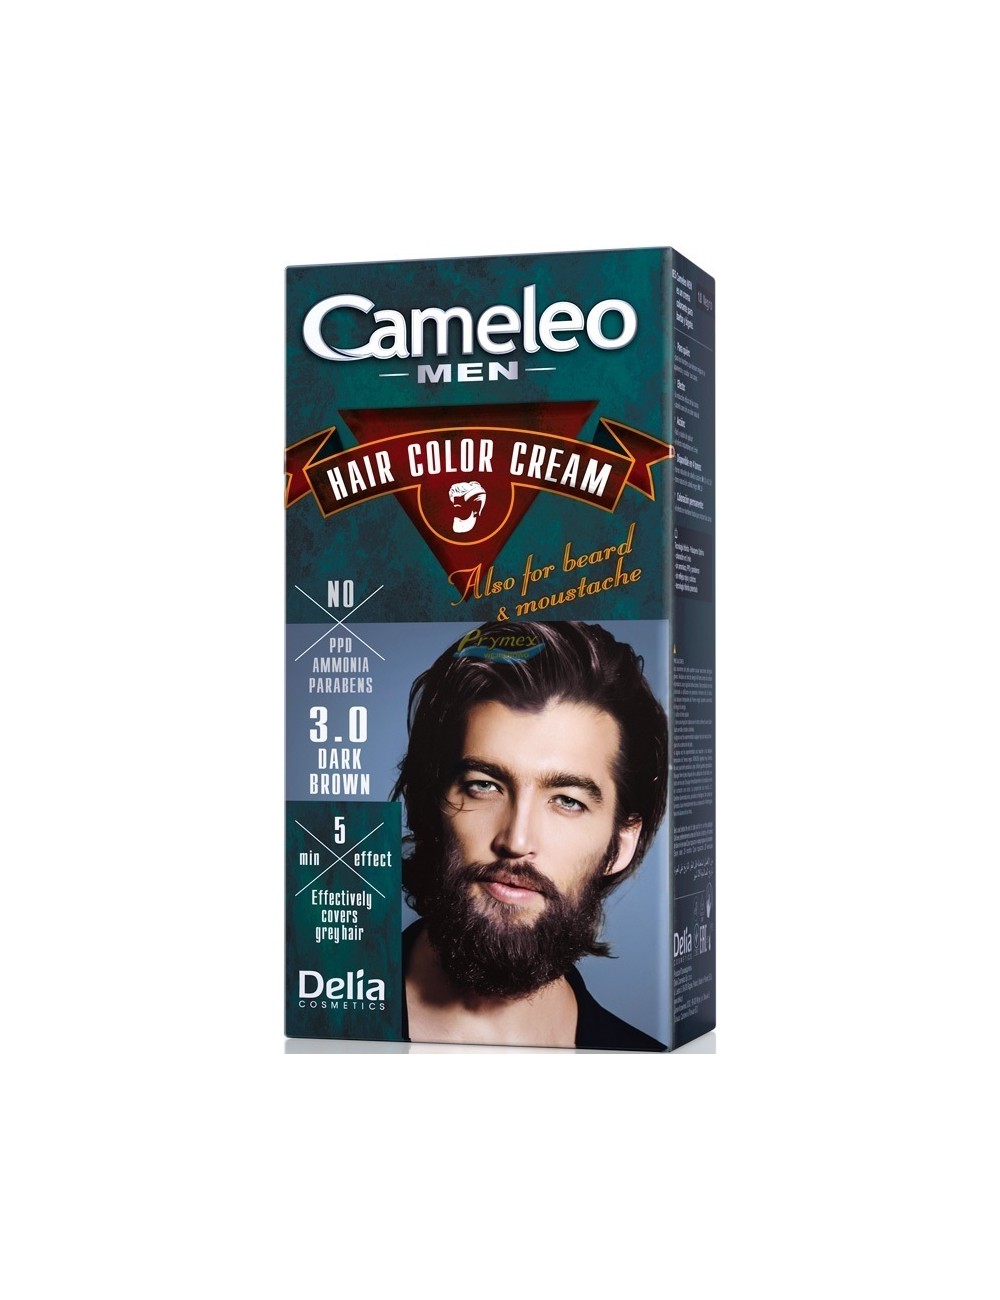 Cameleo Men Farba do Włosów i Brody dla Mężczyzn 3.0 Ciemny Brąz Hair Color Cream 1 szt